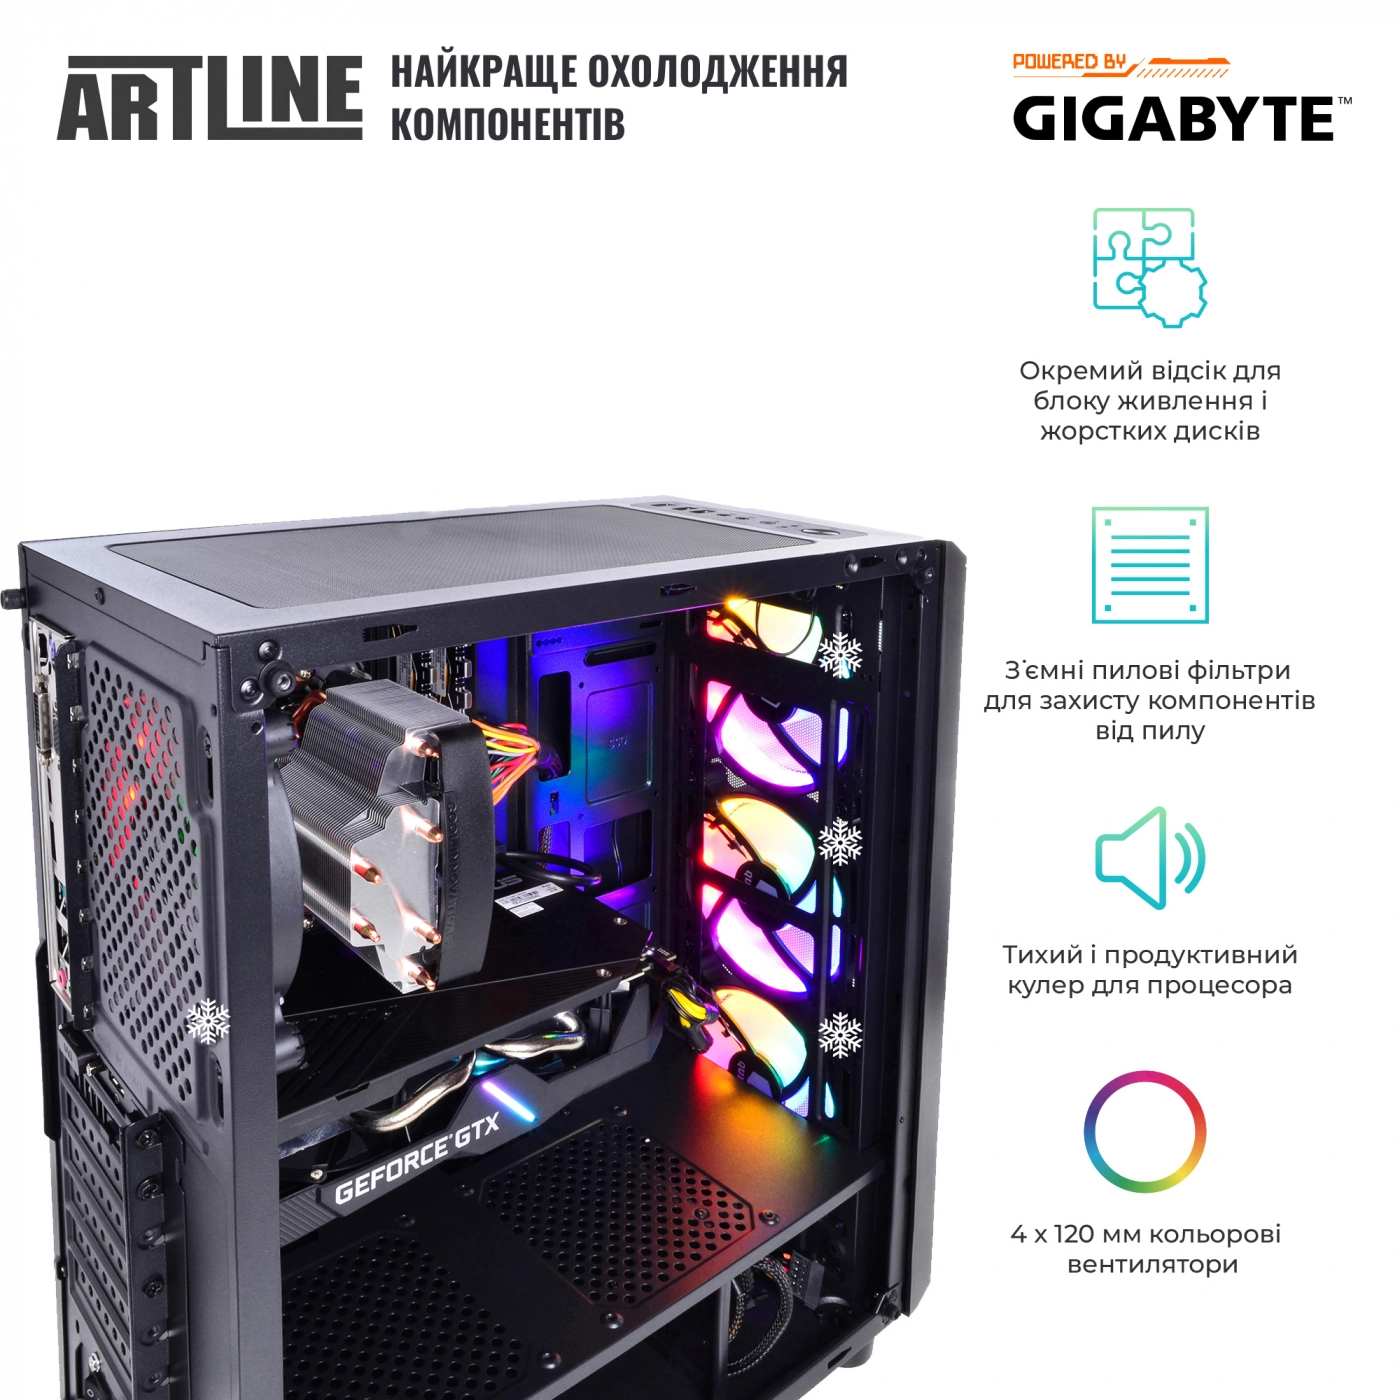 Купить Компьютер ARTLINE Gaming X51v07 - фото 3